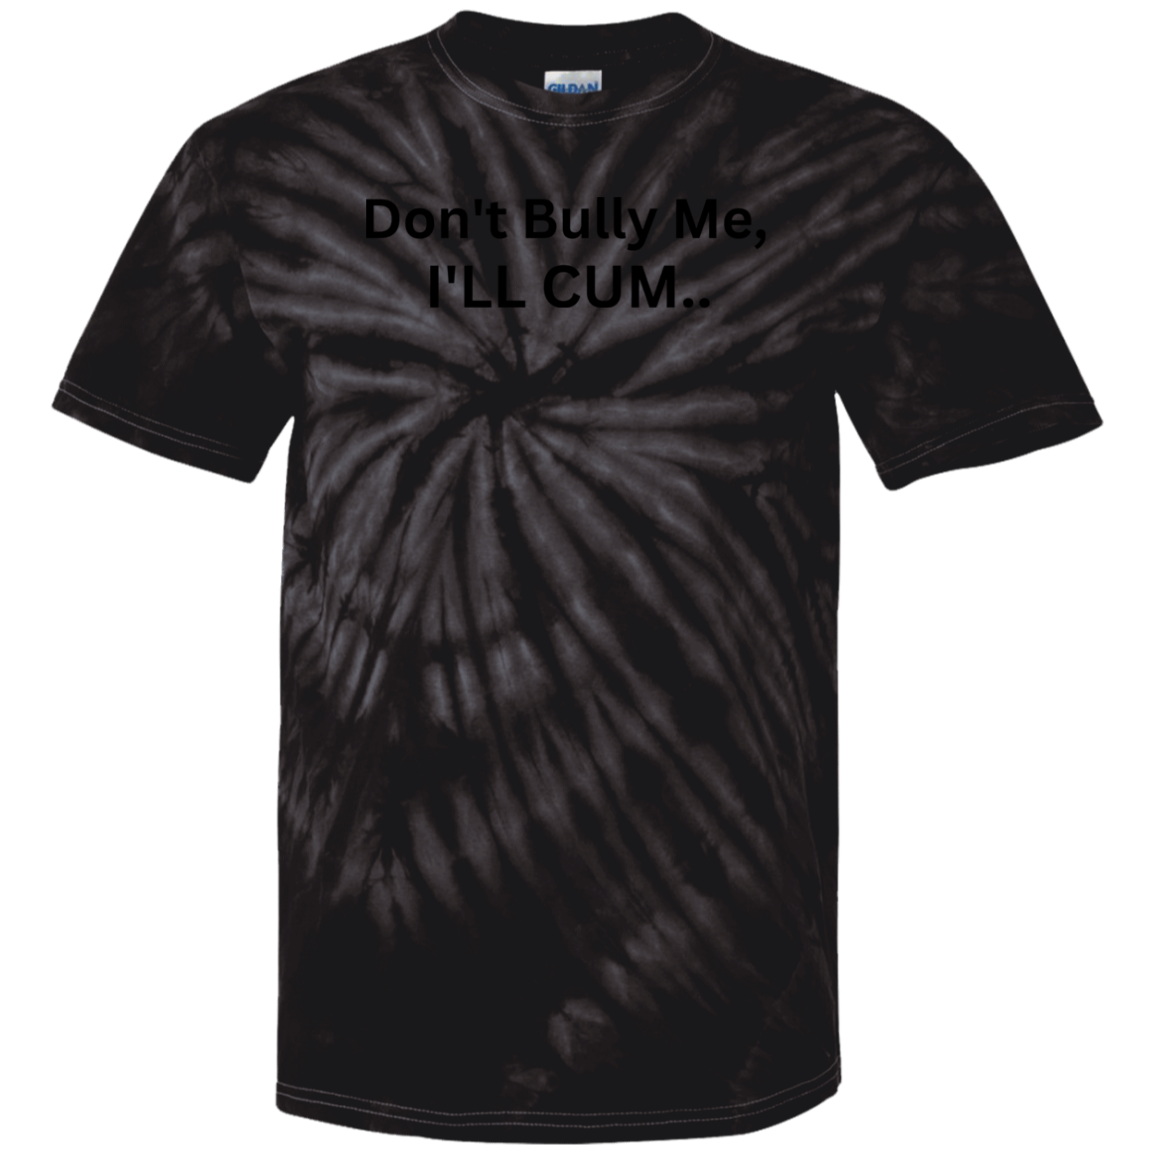 T-shirt Don't Bully Me 08i24i23 CD100 100% Cotton Tie Dye T-Shirt